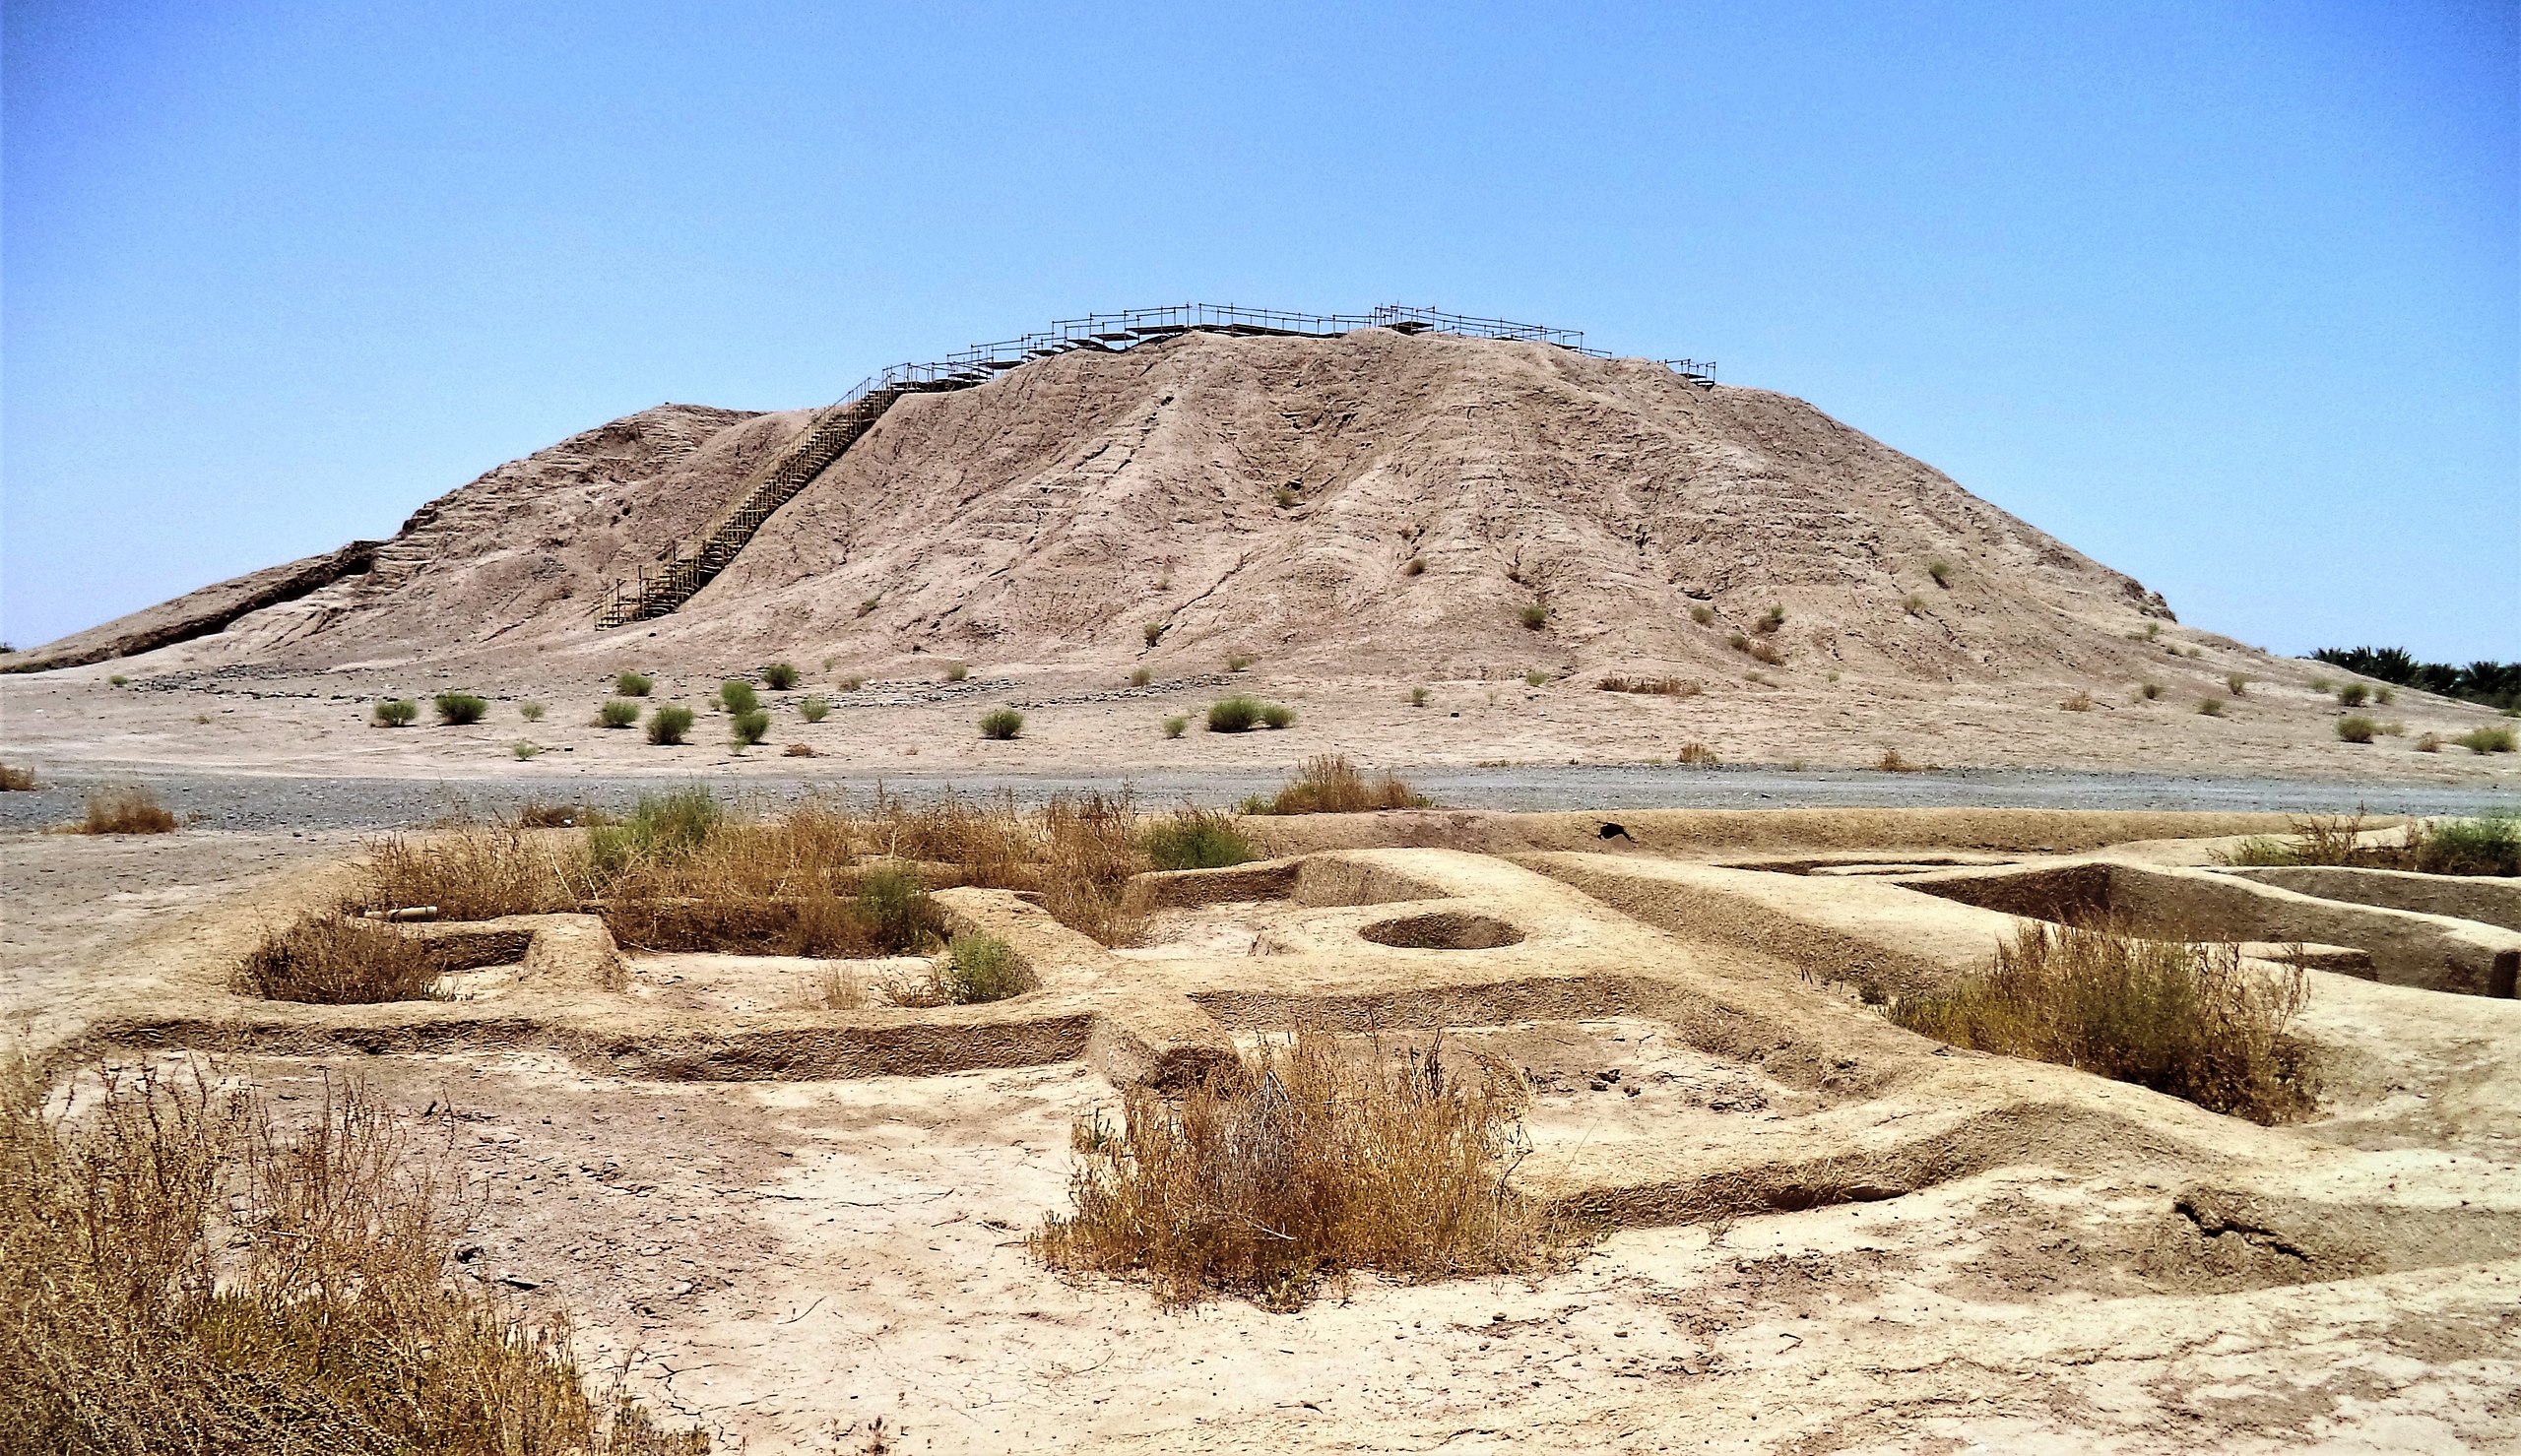 Early Bronze Age community in Konar Sandal near Jiroft in Iran.